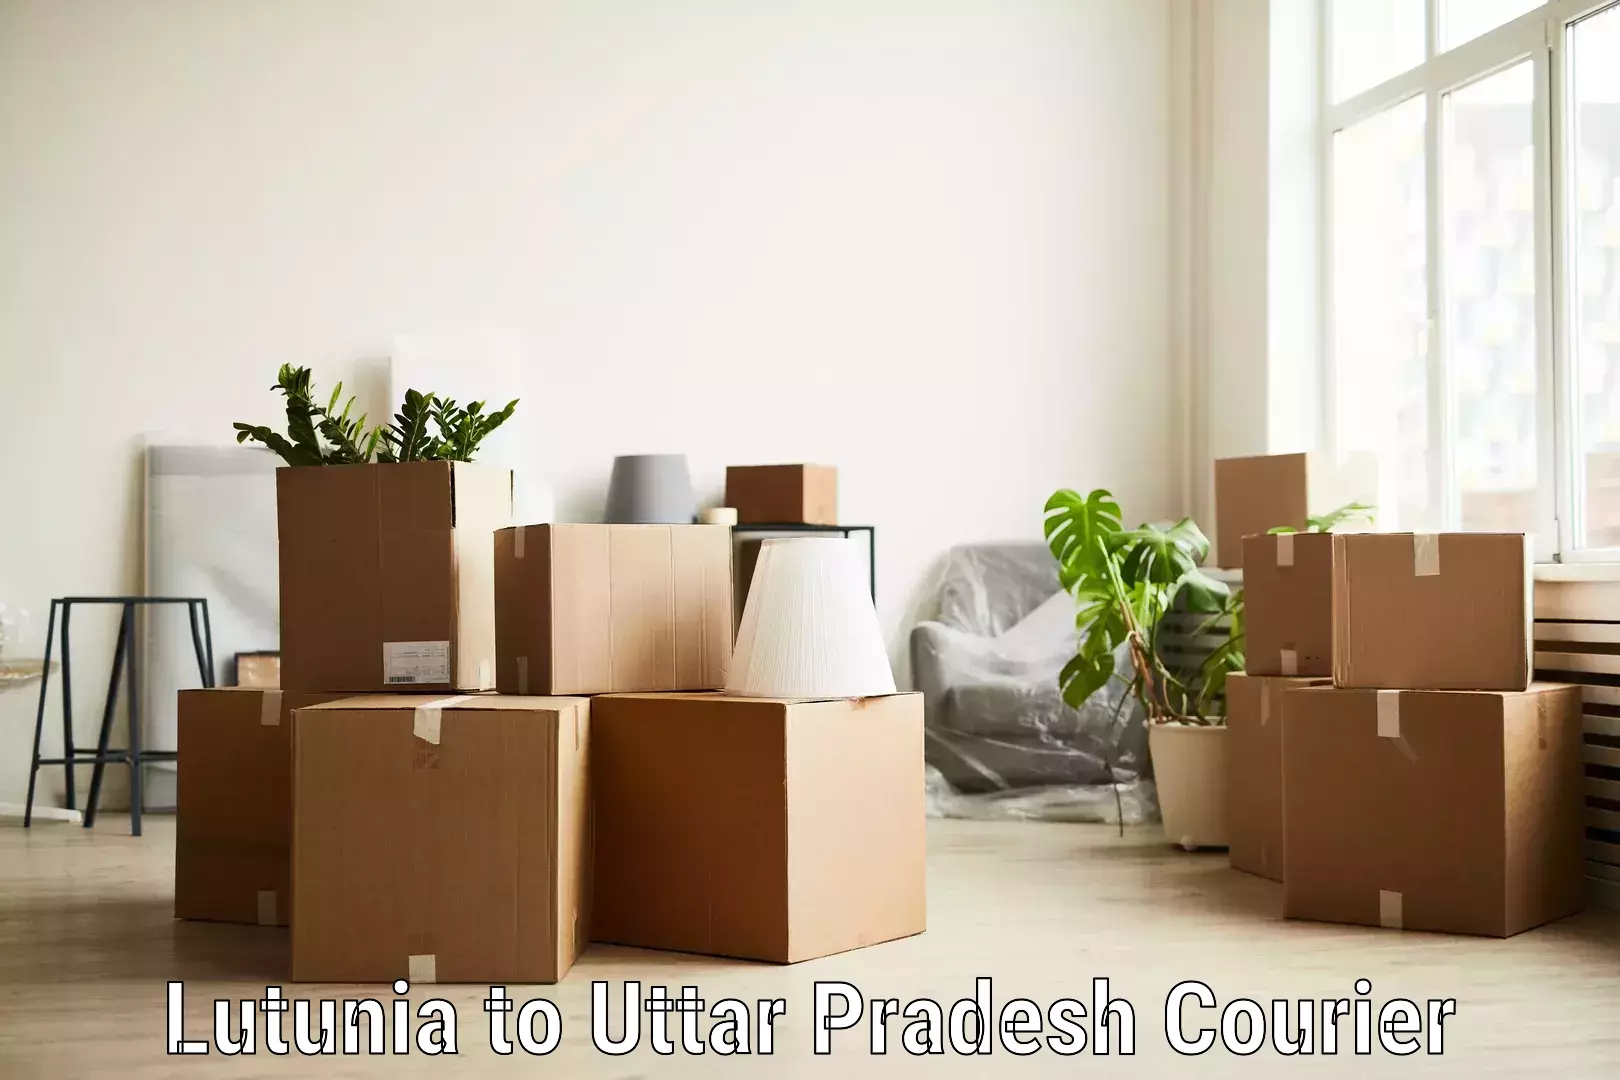 Courier service comparison Lutunia to Uttar Pradesh